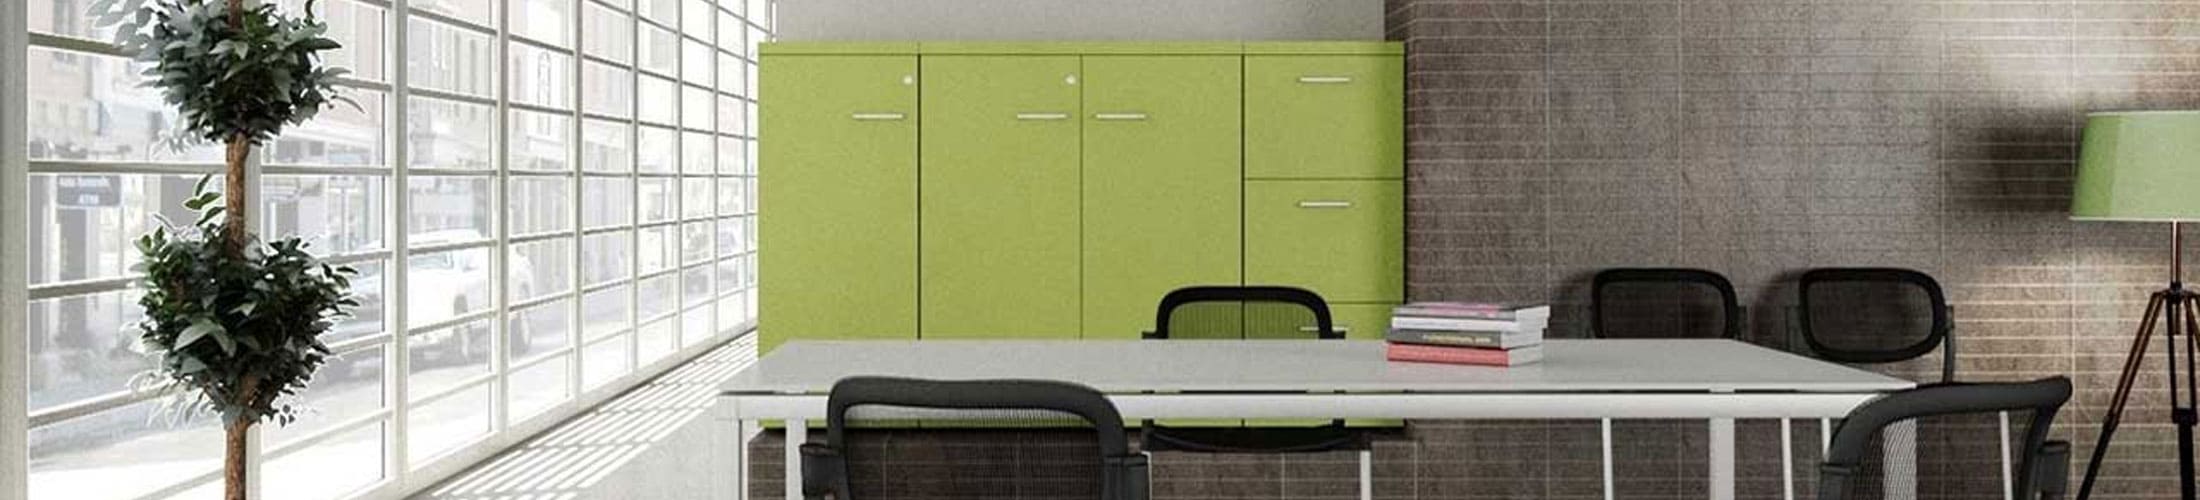 ¿Conoces los beneficios de decorar oficinas verdes?